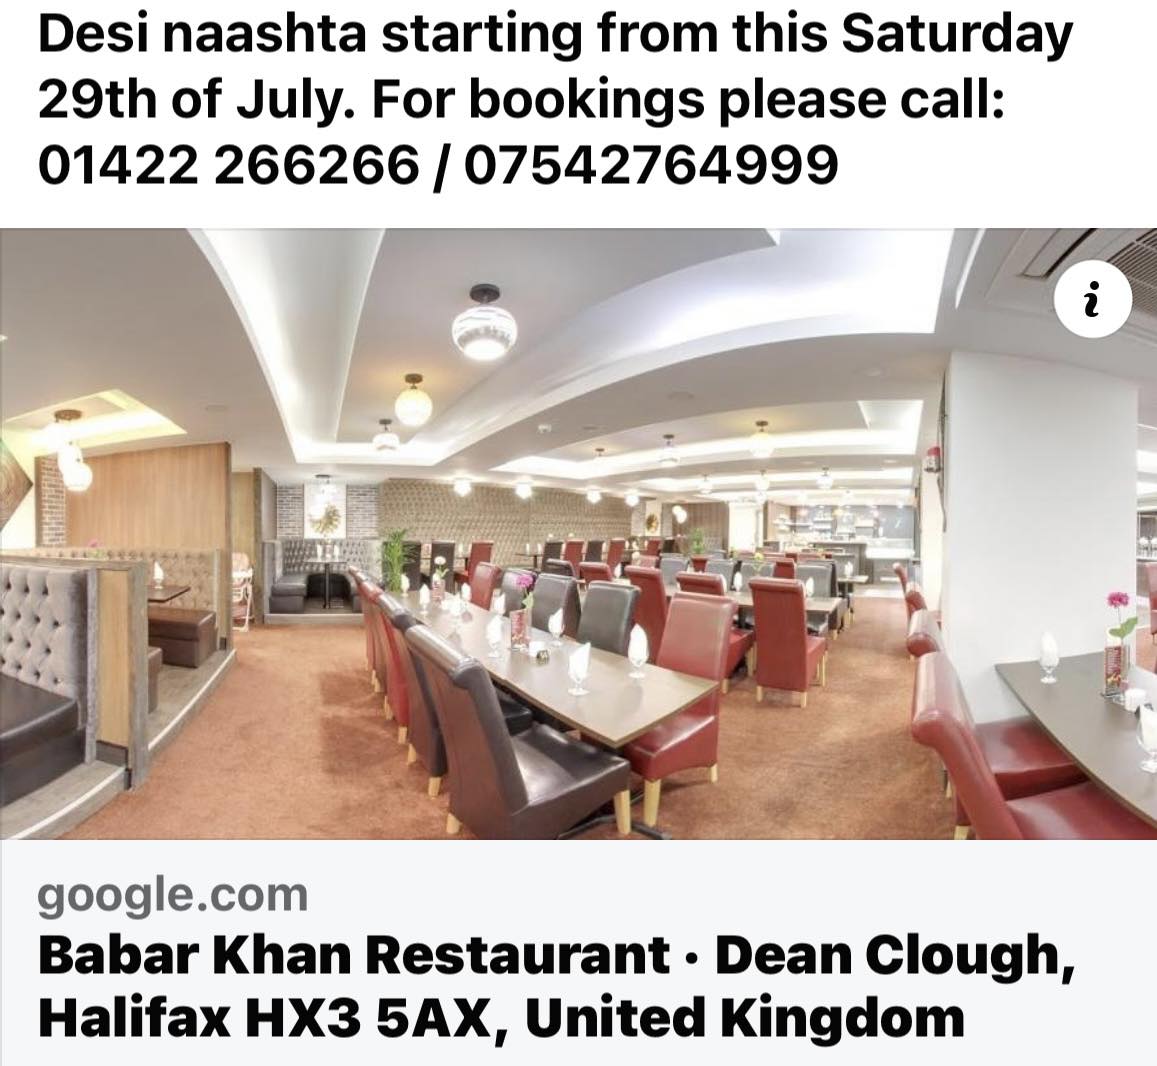 Babar Khan Restaurant